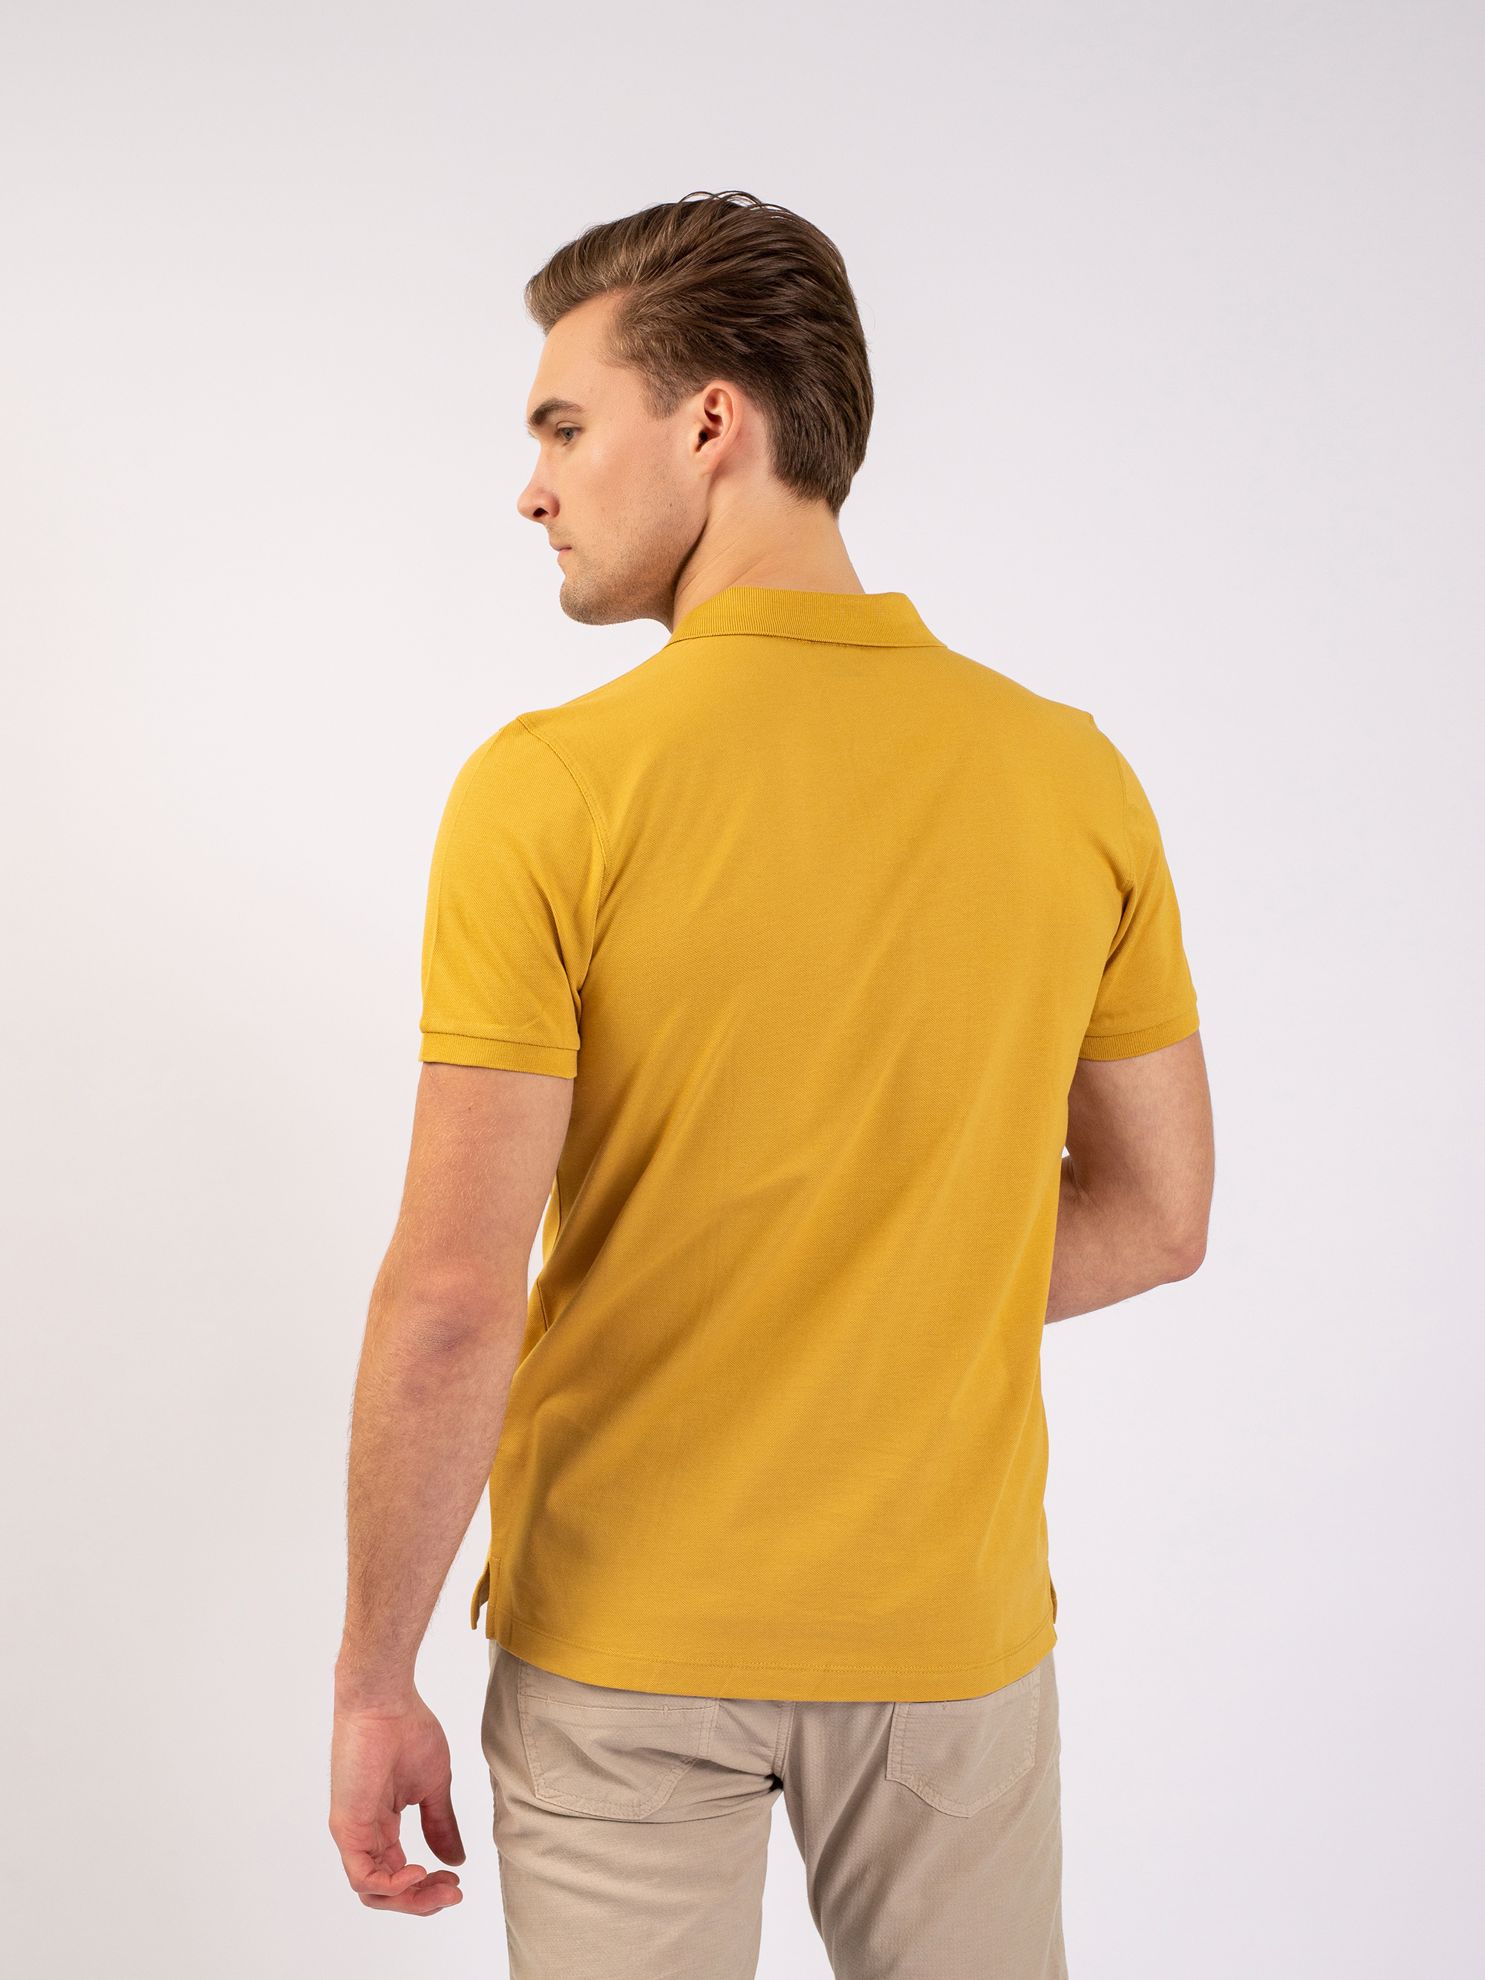 Karaca Erkek Slim Fit Polo Yaka Tişört-Hardal. ürün görseli